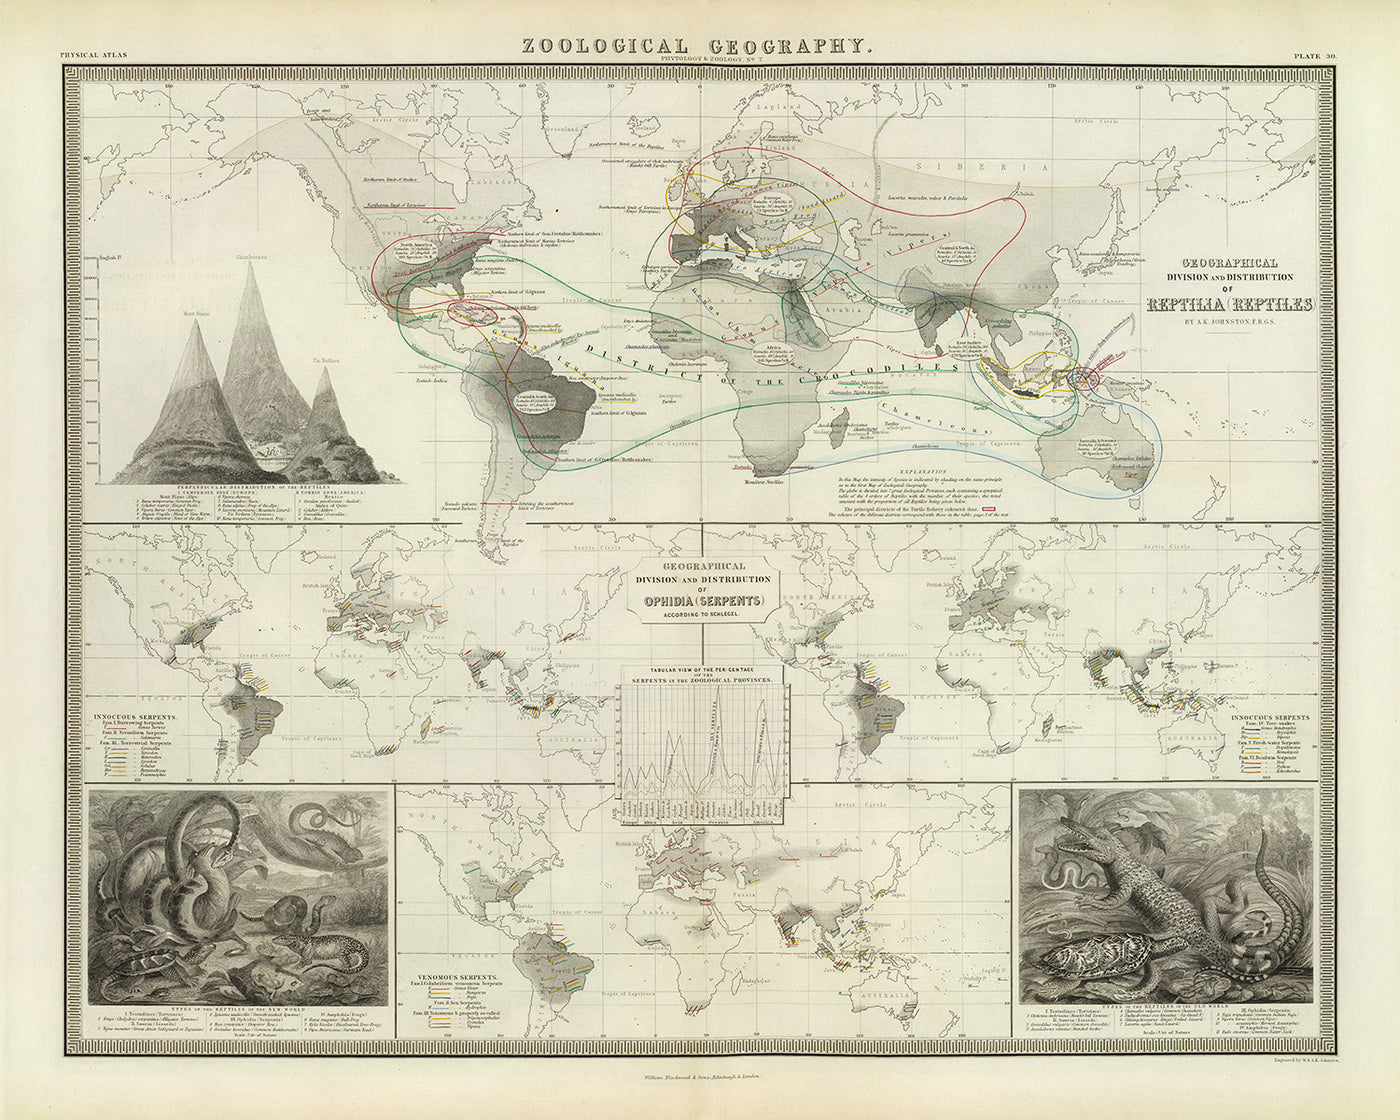 Alte Weltkarte der Reptilienverteilung von Johnston, 1856: Schlangen, Eidechsen und andere Reptilienillustrationen